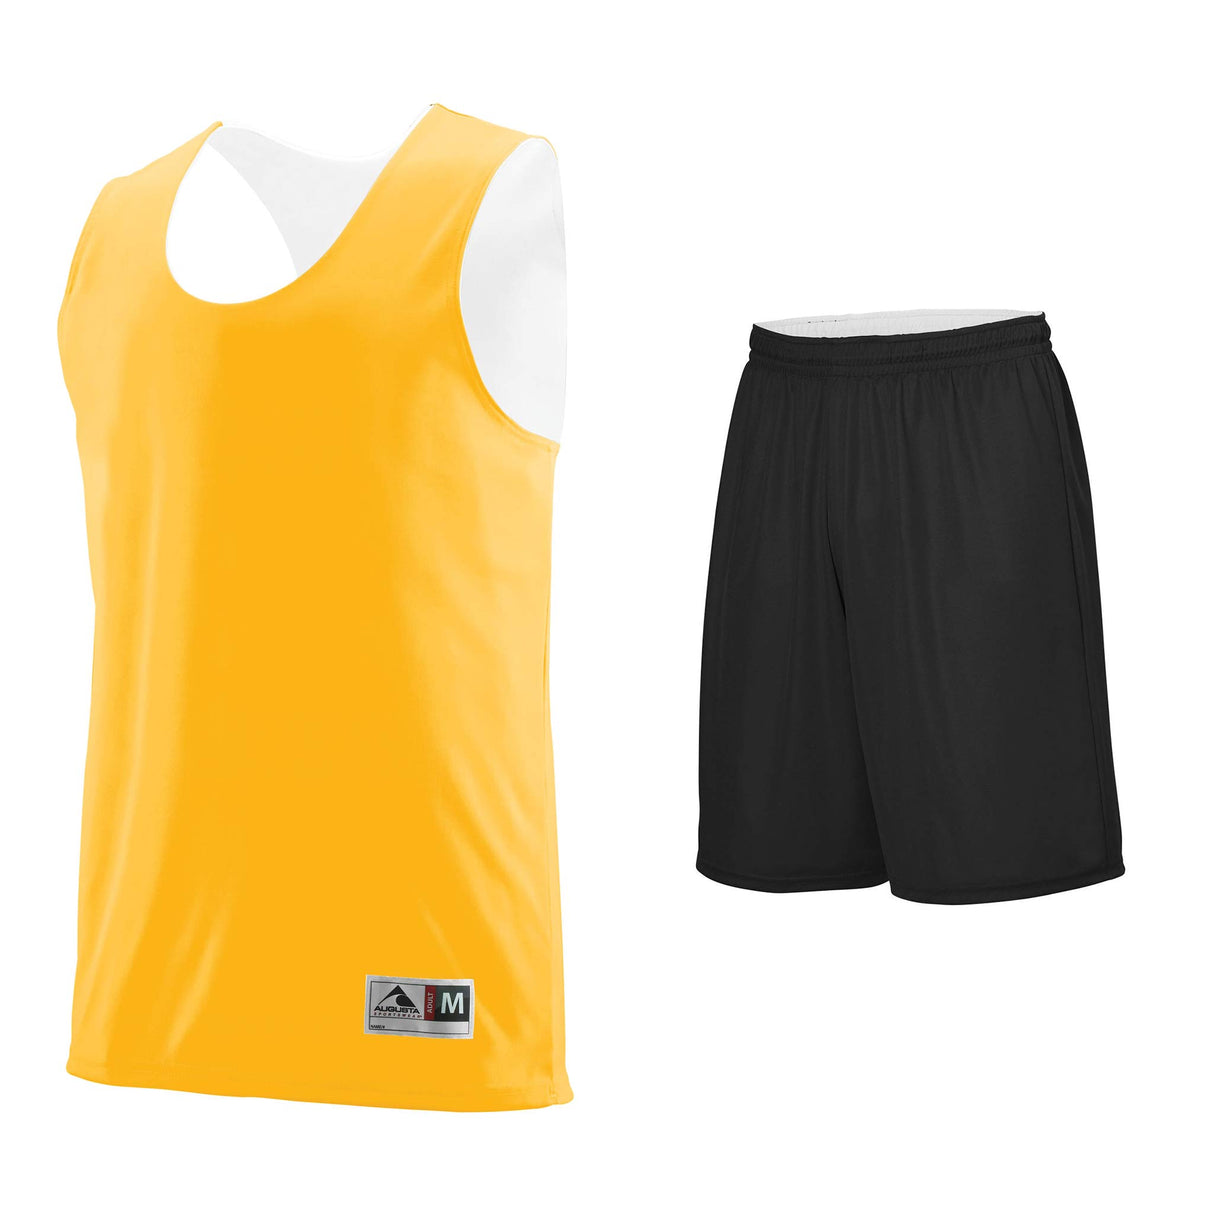 Augusta Sportswear Uniforme camisole et short de basketball réversible - Camisole Jaune / Blanc et Short Noir / Blanc